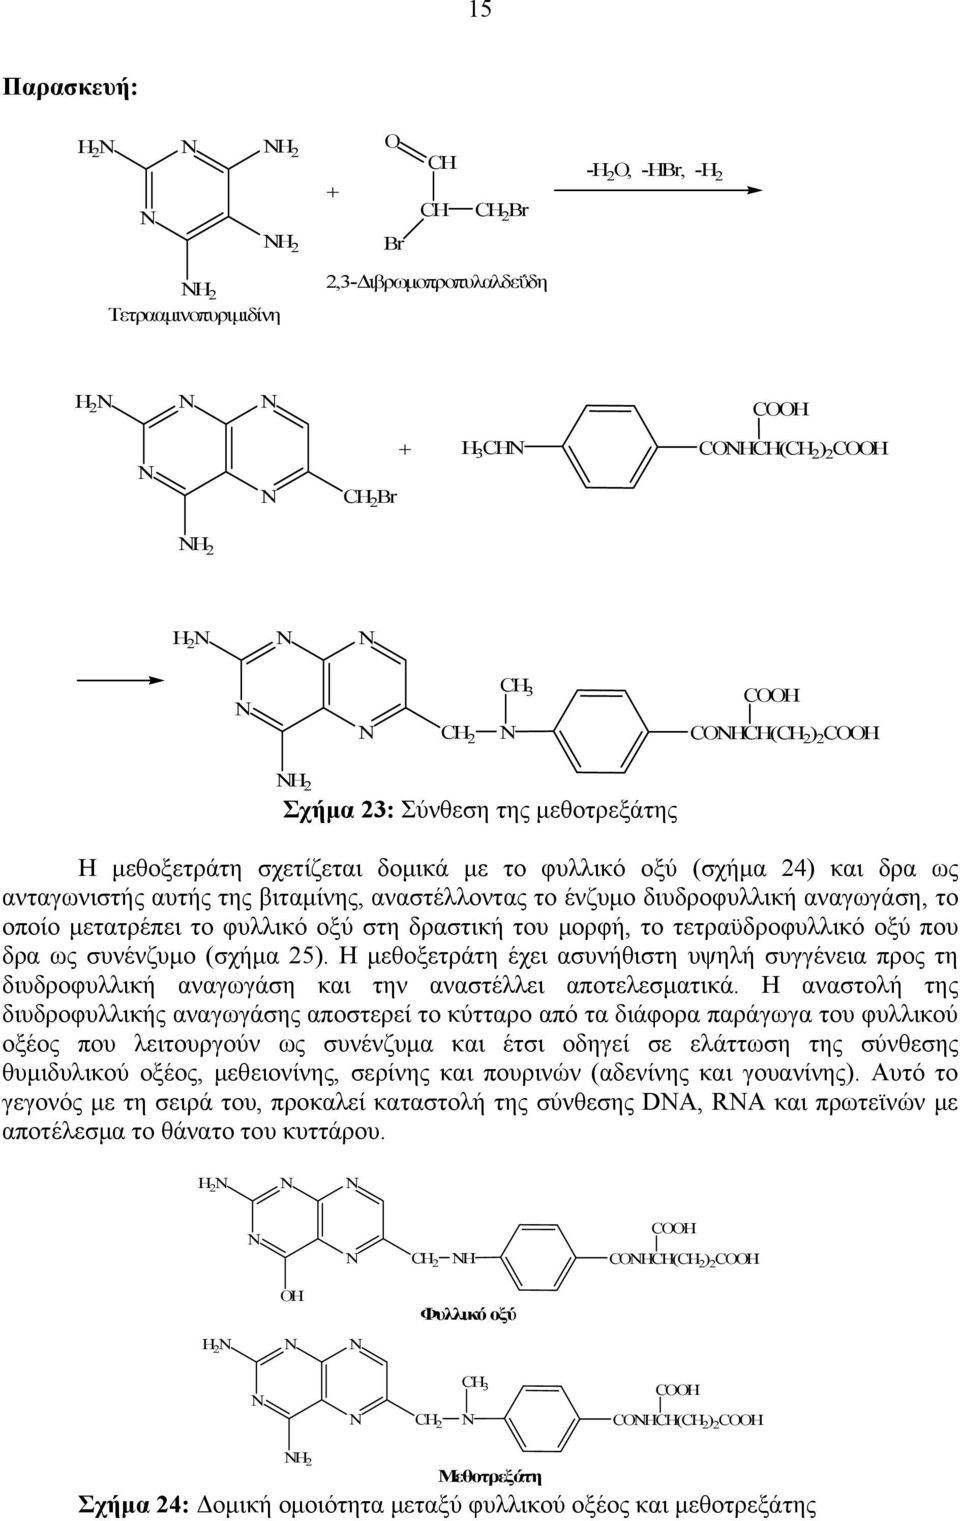 δραστική του μορφή, το τετραϋδροφυλλικό οξύ που δρα ως συνένζυμο (σχήμα 25). Η μεθοξετράτη έχει ασυνήθιστη υψηλή συγγένεια προς τη διυδροφυλλική αναγωγάση και την αναστέλλει αποτελεσματικά.